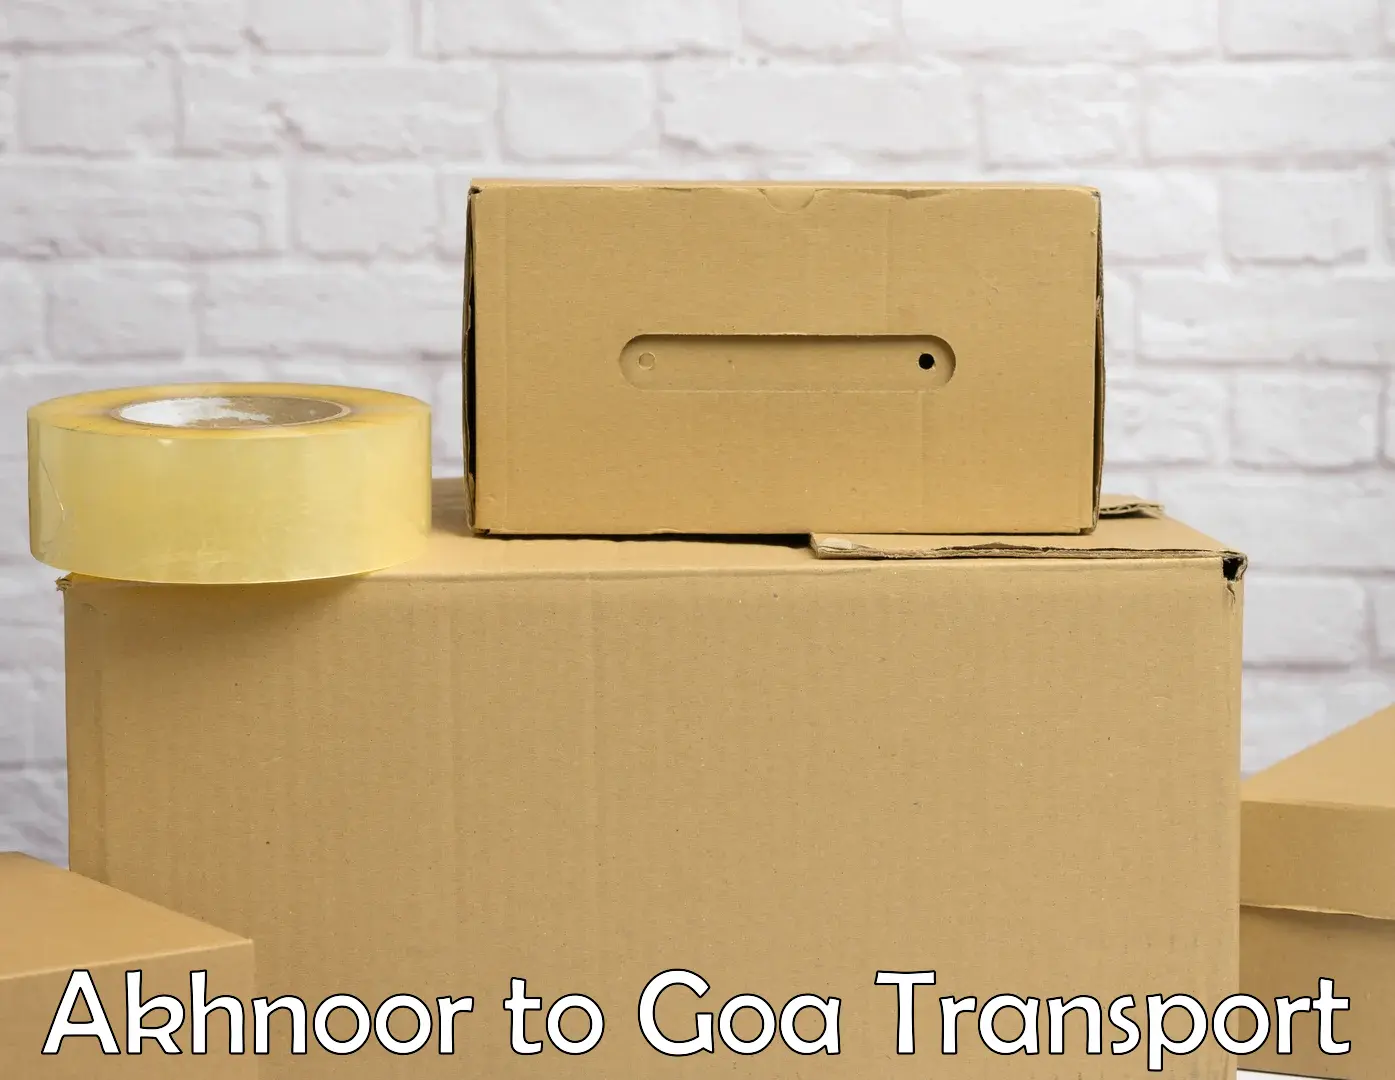 Transport in sharing in Akhnoor to IIT Goa